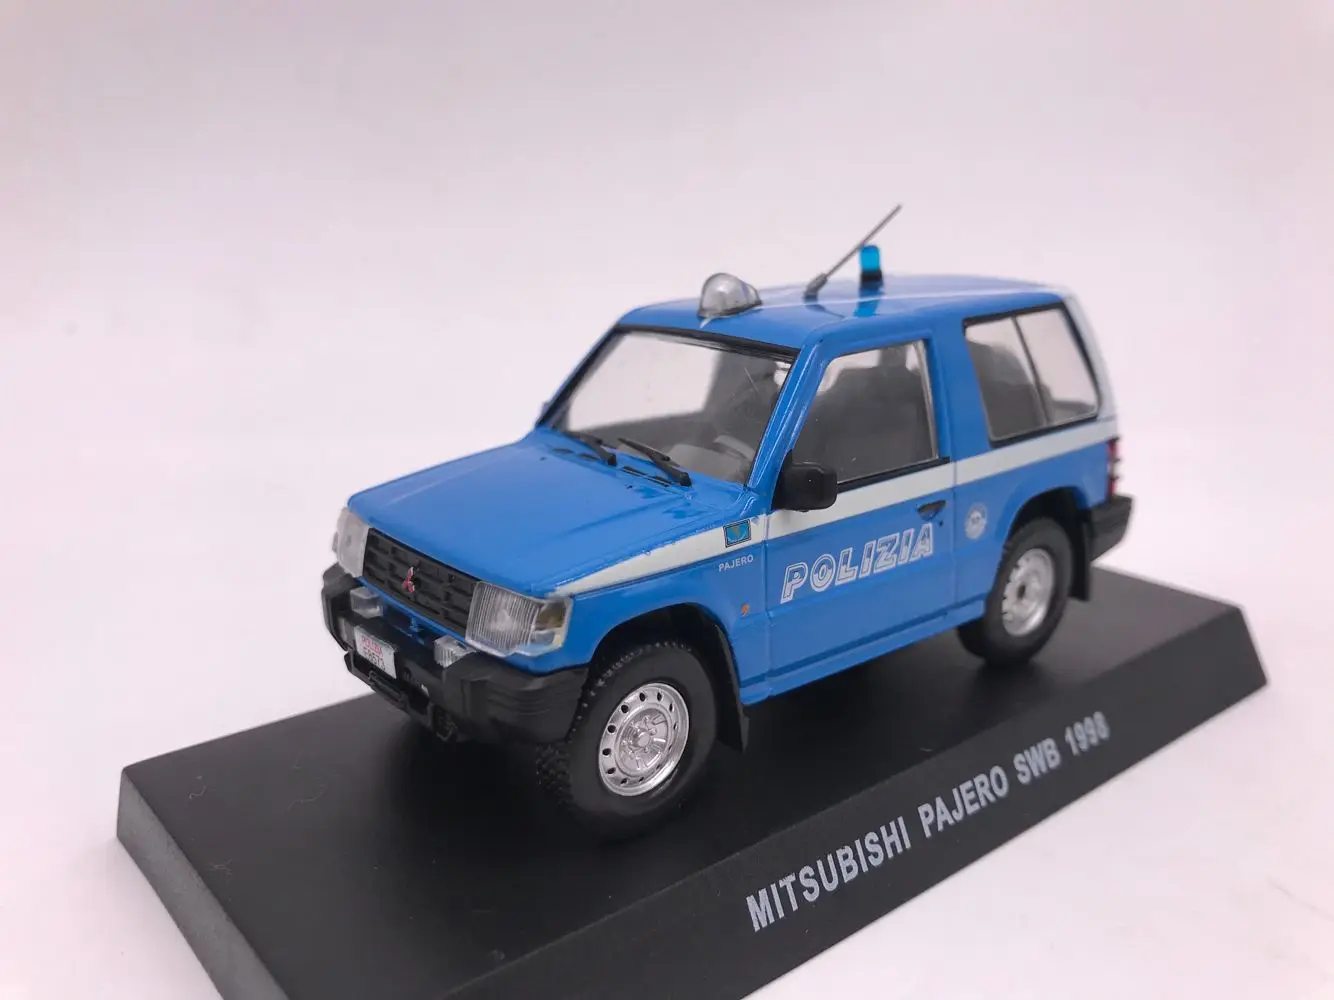 D EA 1:43 Mitsubishi Pajero SWB 1998 бутик сплав автомобиль игрушки для детей модель детской игрушки подарок пакет